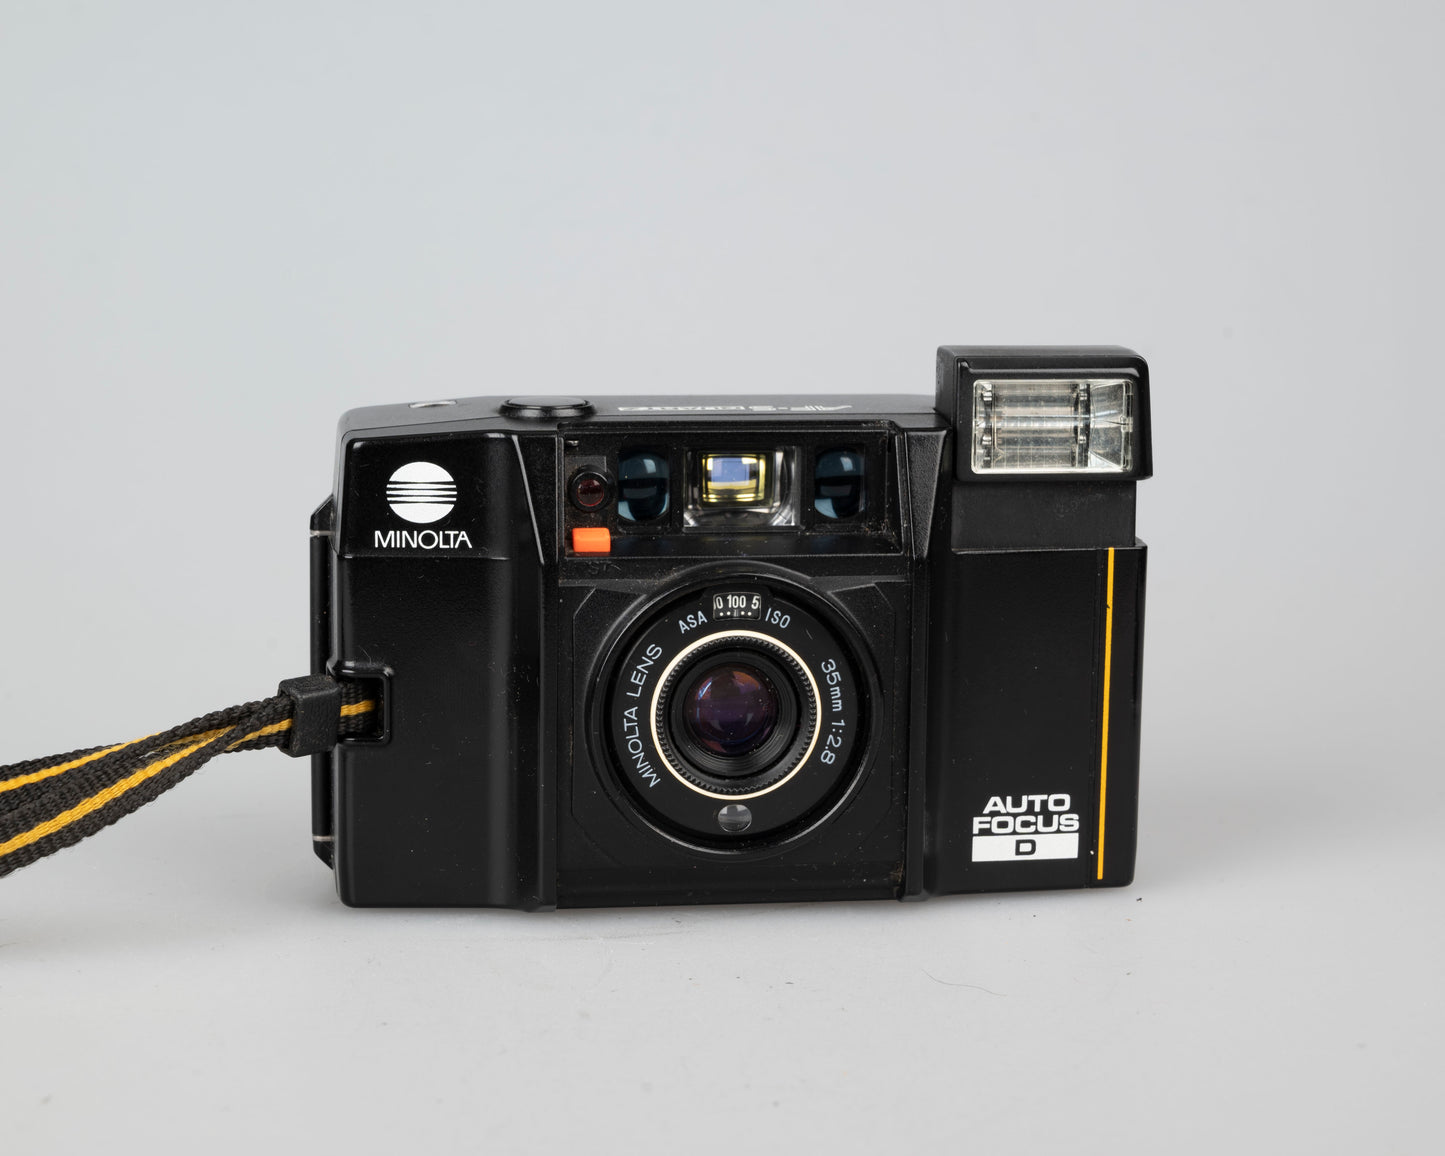 Minolta AF-S Quartz Auto Focus D " 35mm camera (serial 5004699)